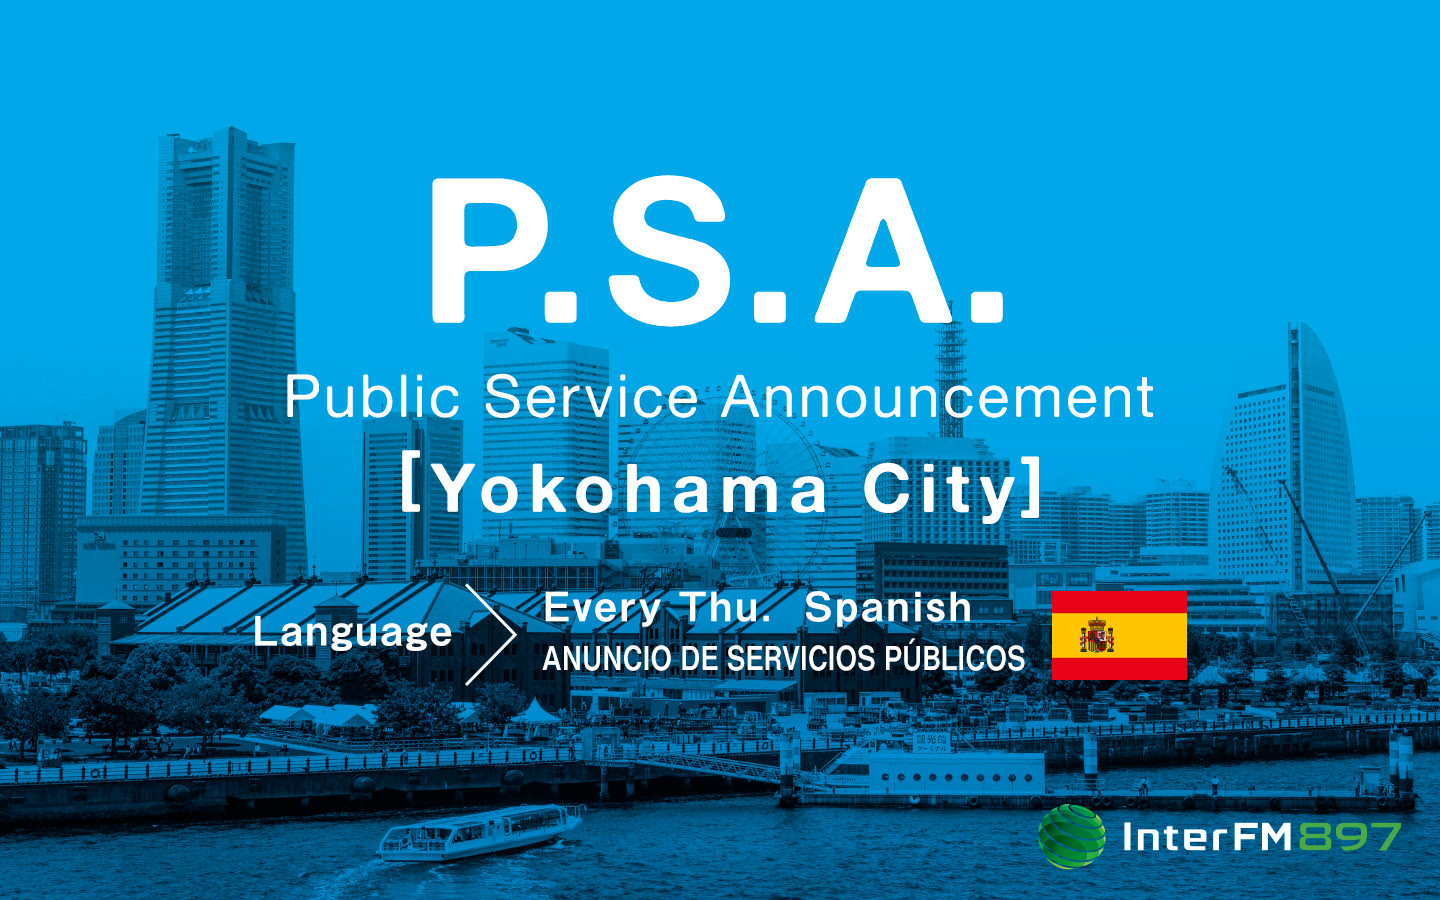 Public Service Announcement - Ciudad de Yokohama (Español)